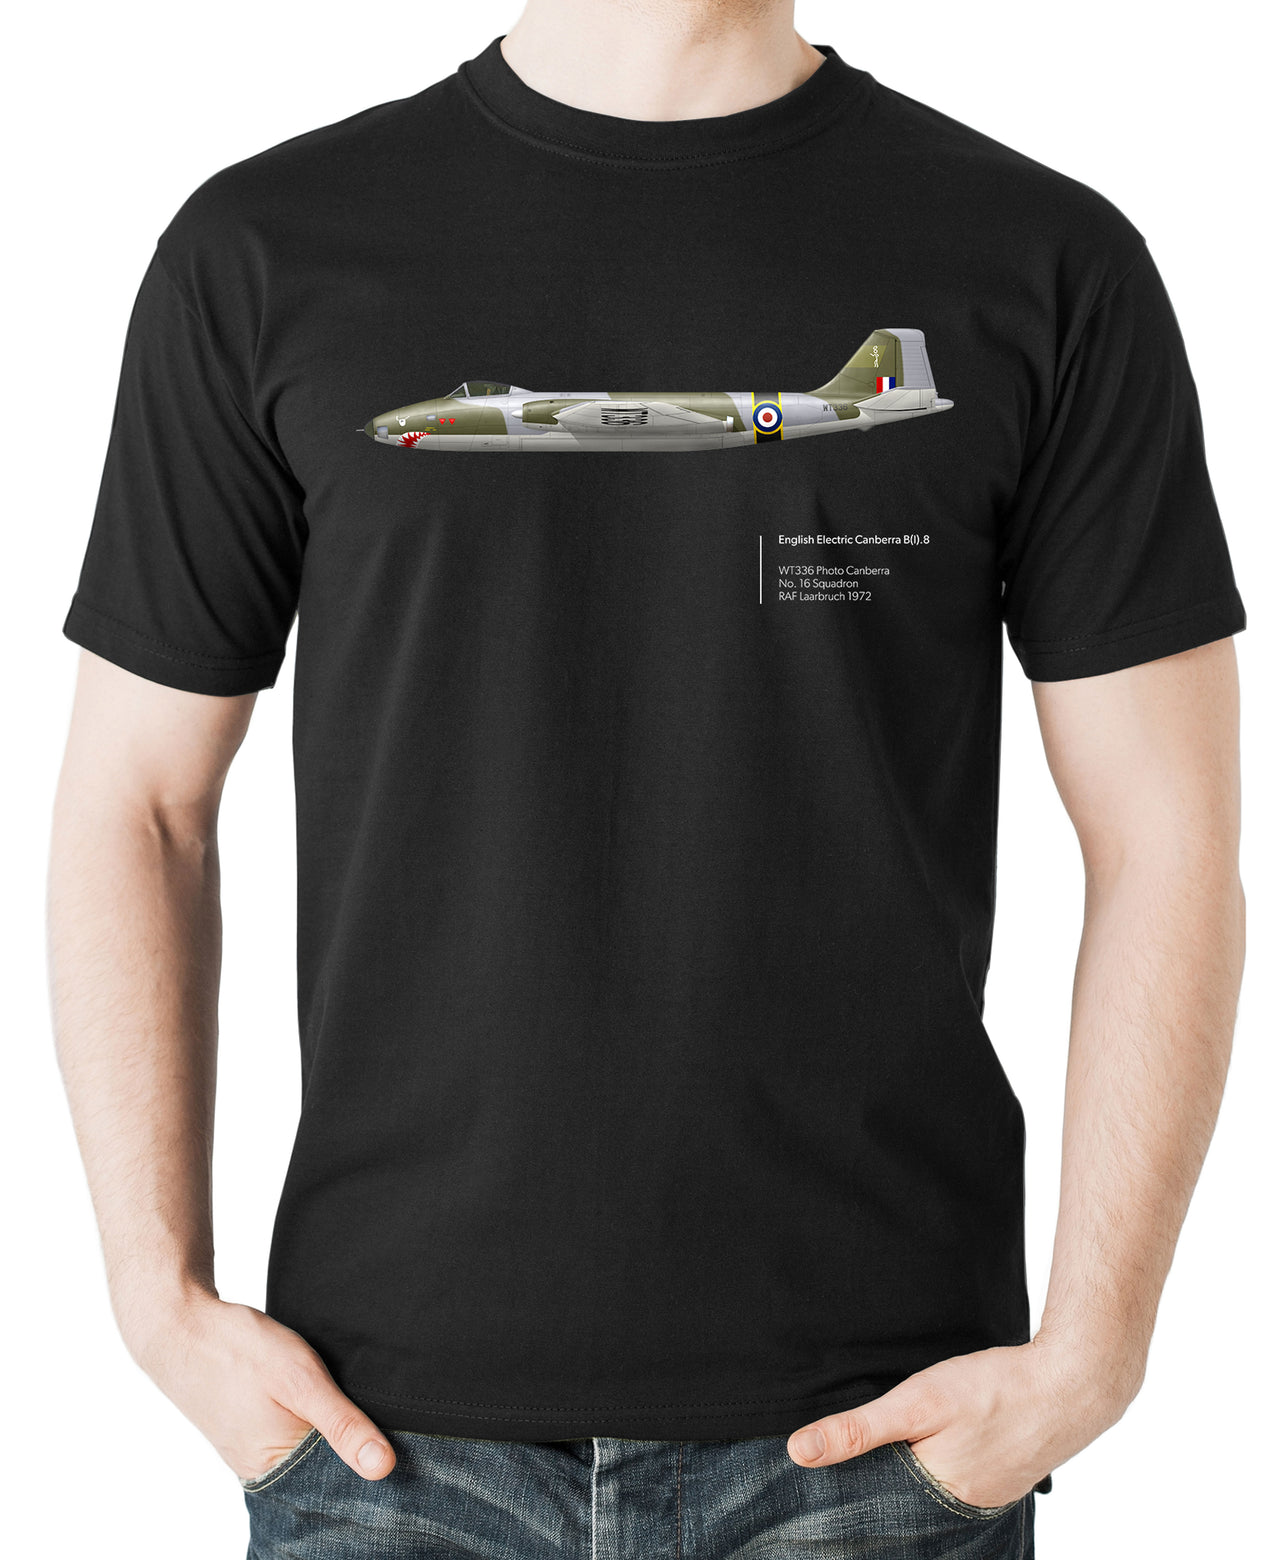 Canberra B(I).8 - T-shirt